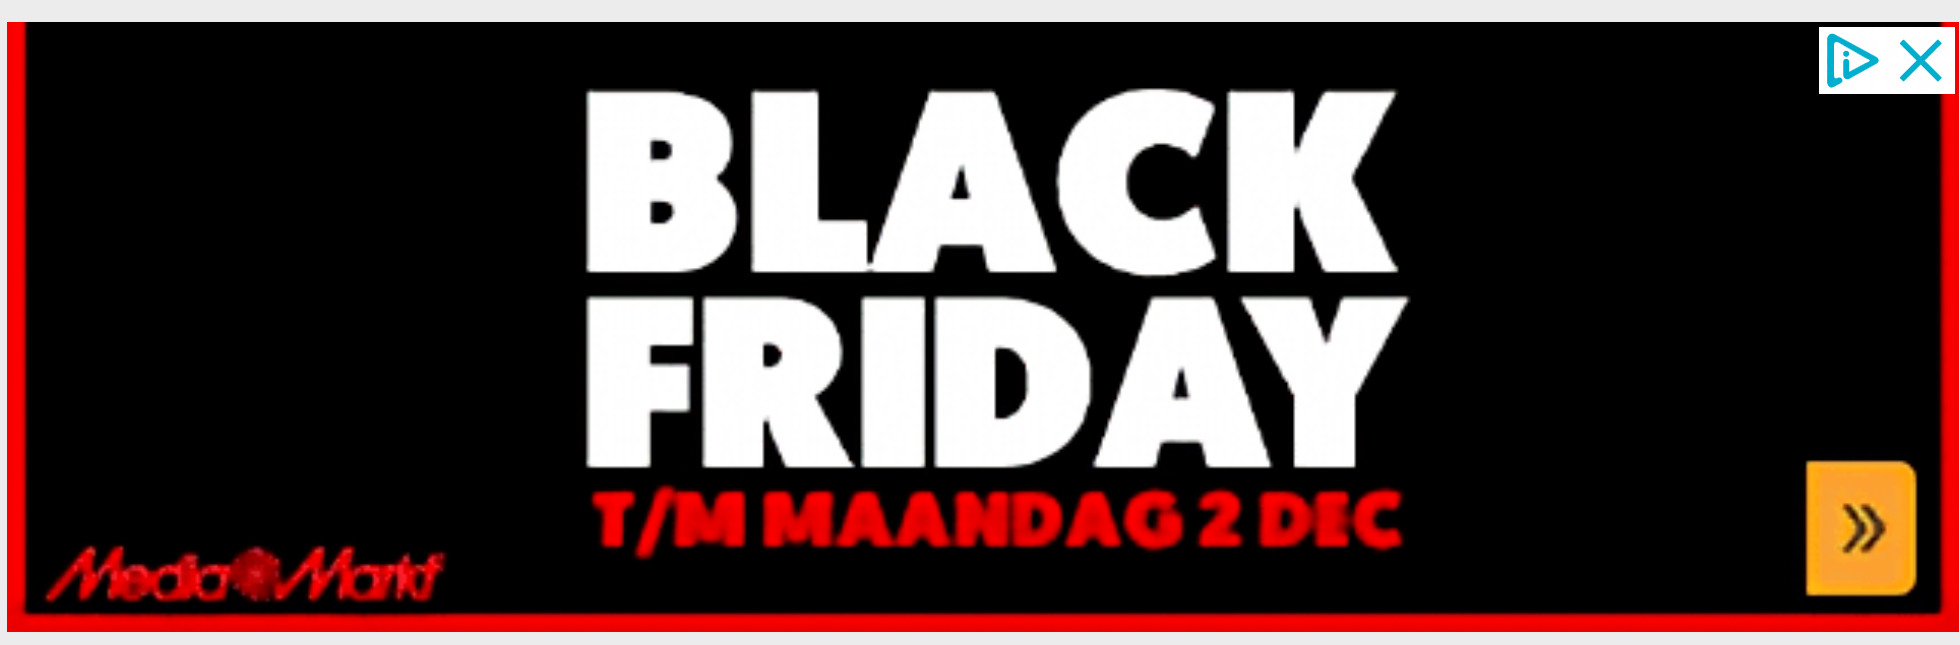 Media Markt Black Friday